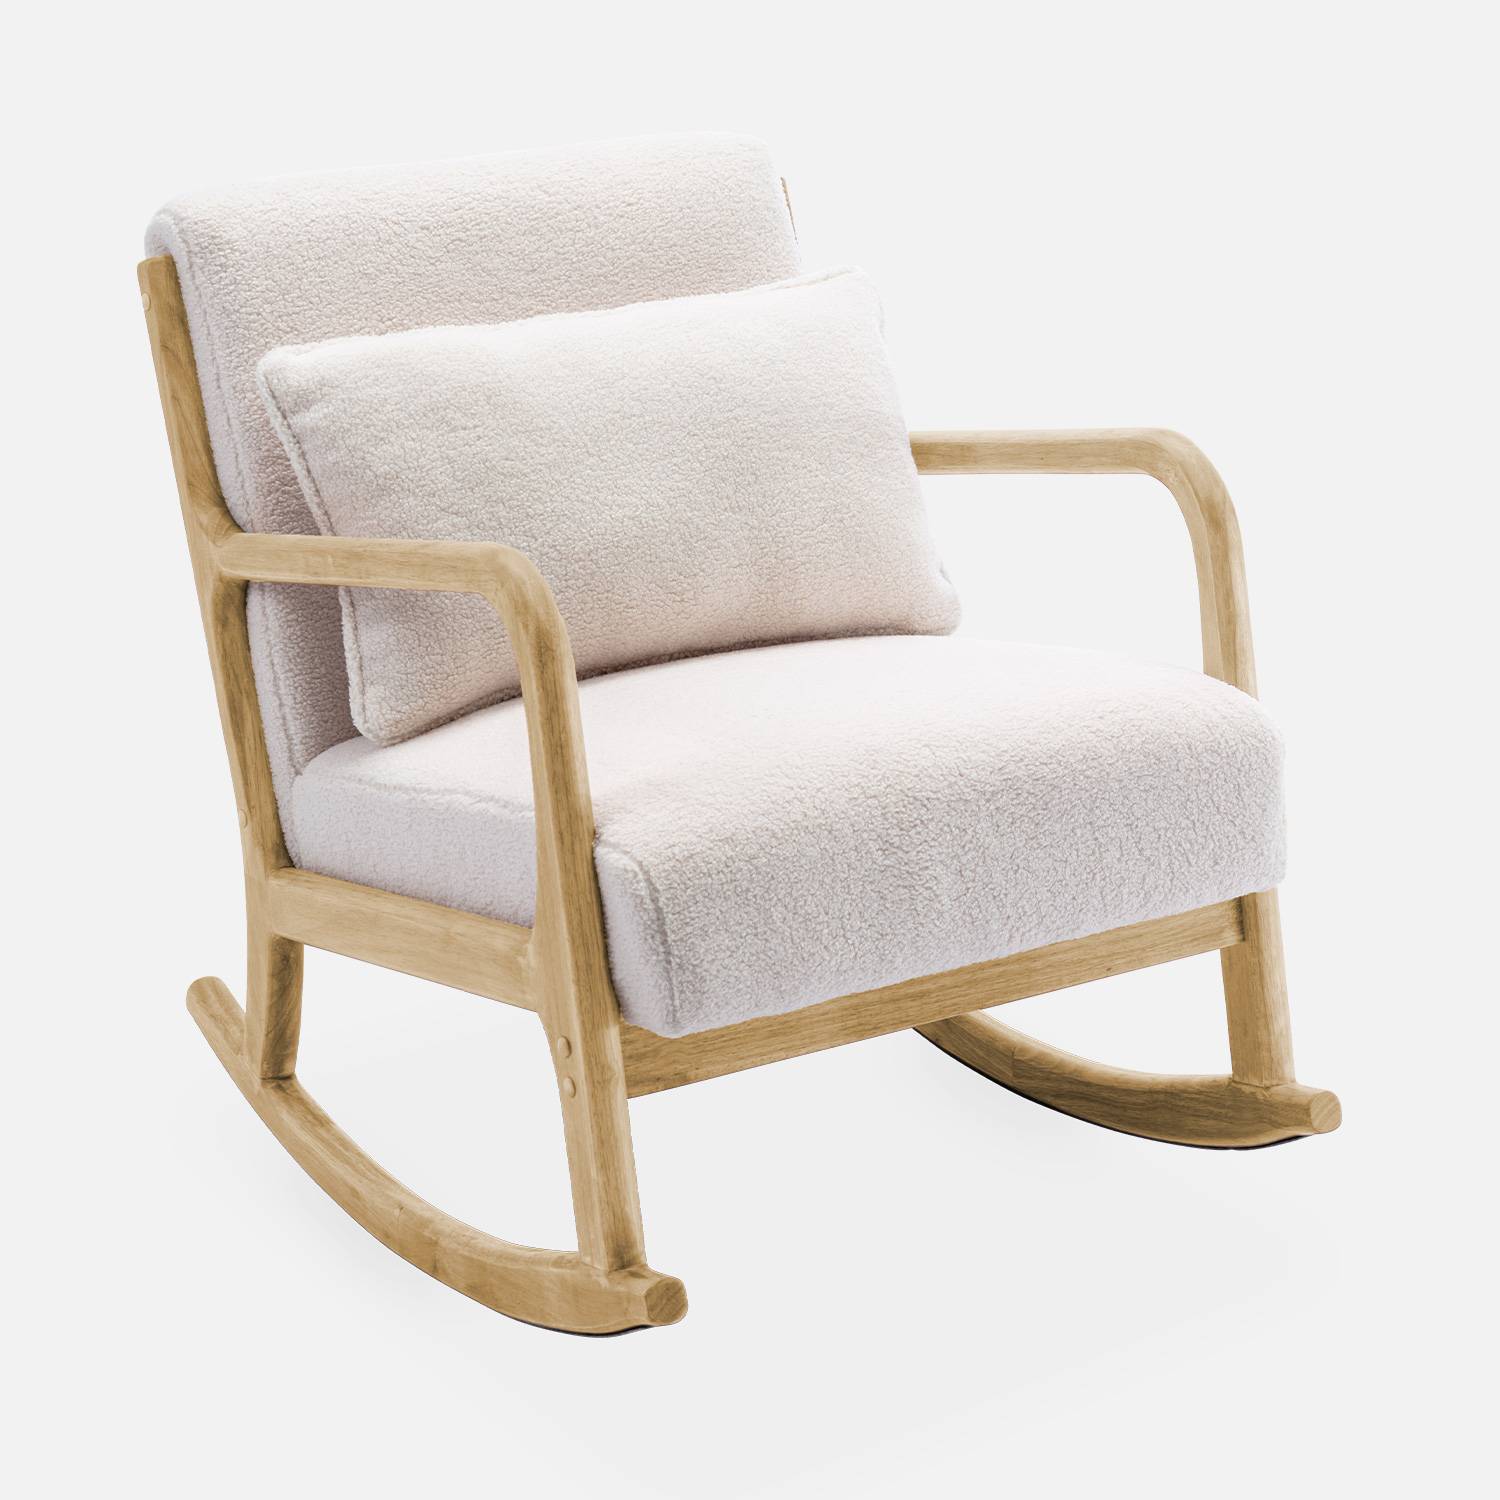 Sedia a dondolo di design in legno e tessuto, 1 posto, sedia a dondolo scandinava, bouclé Photo4